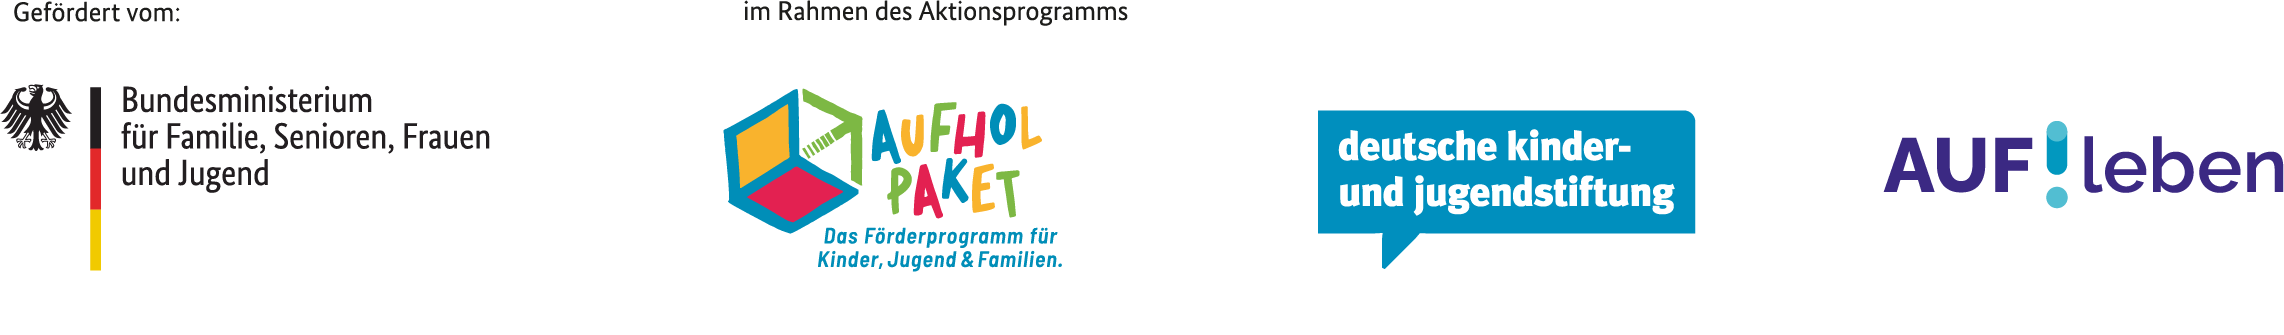 Logos der Förderer des Programms AUF!leben - Zukunft ist jetzt.